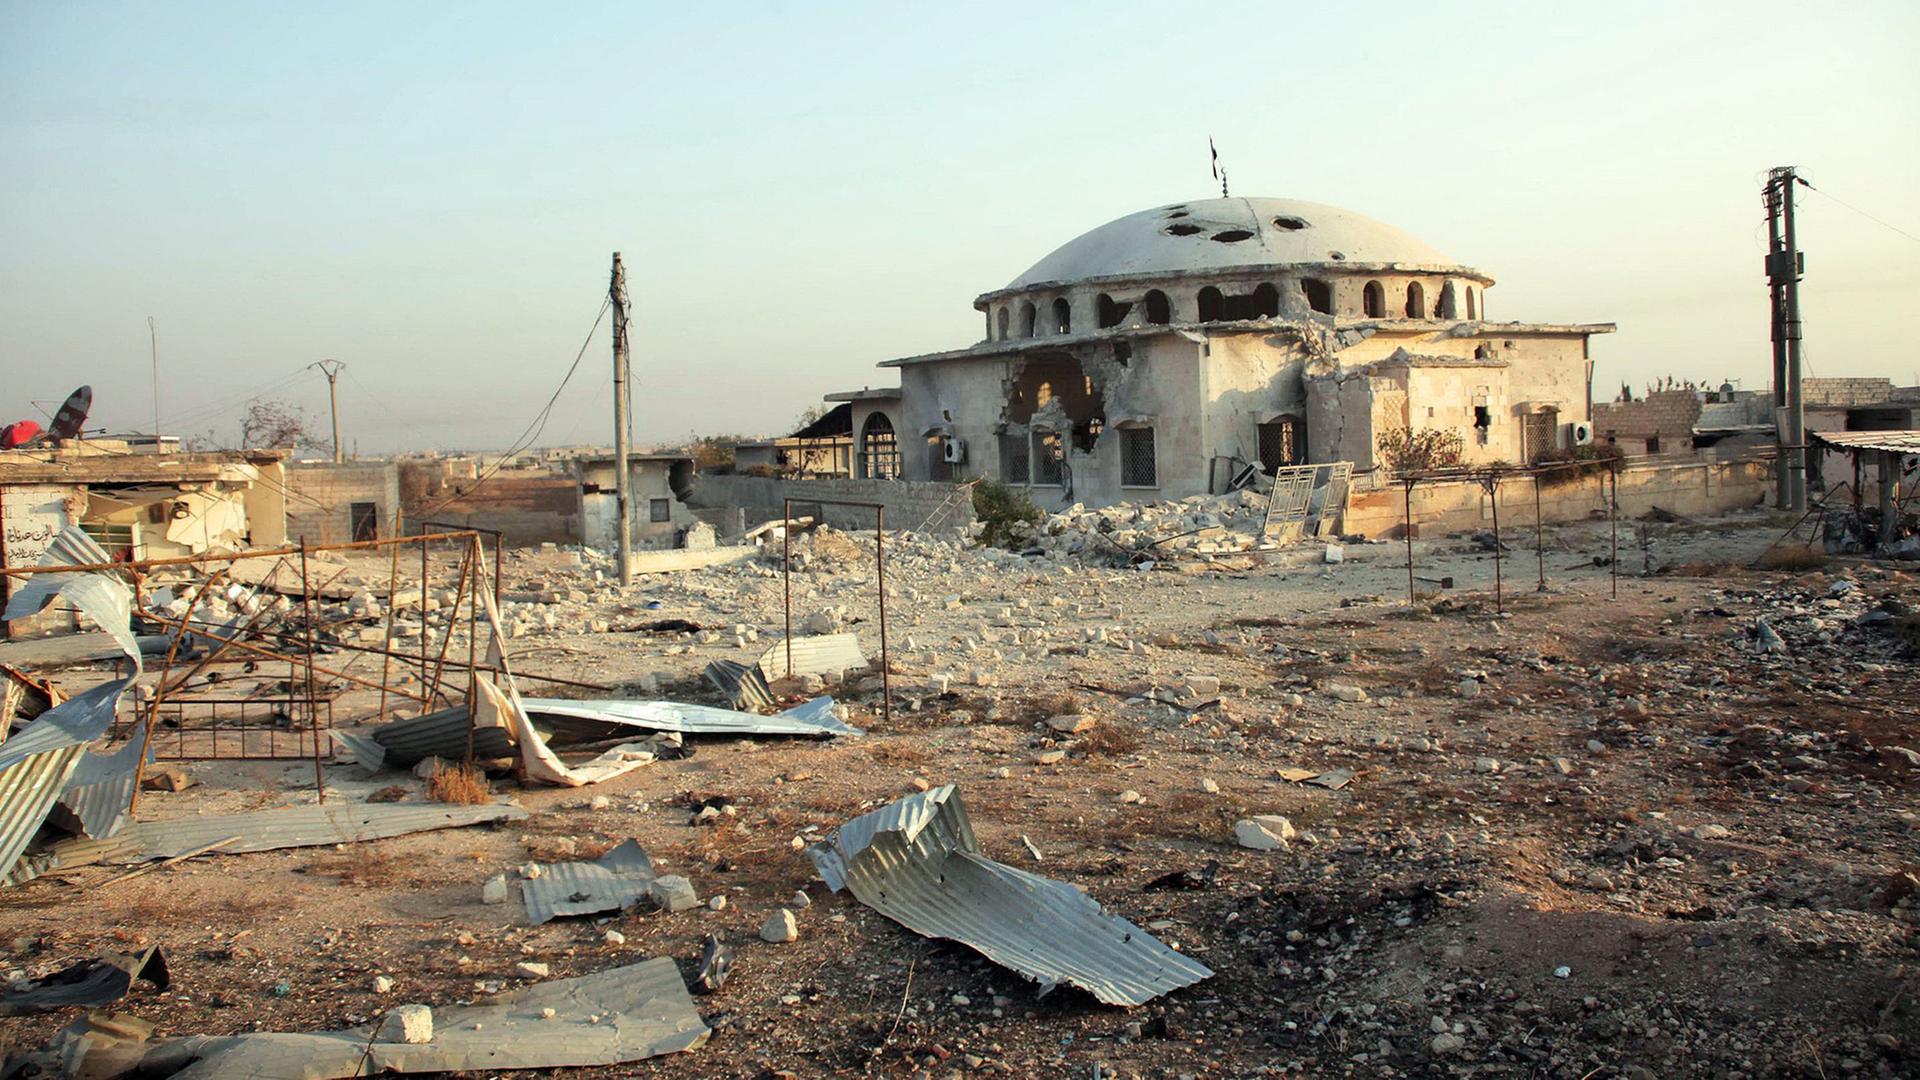 Der Bürgerkrieg in Syrien hat zu großen Verwüstungen geführt, man sieht ein zerstörtes Haus in der Stadt Aleppo. 